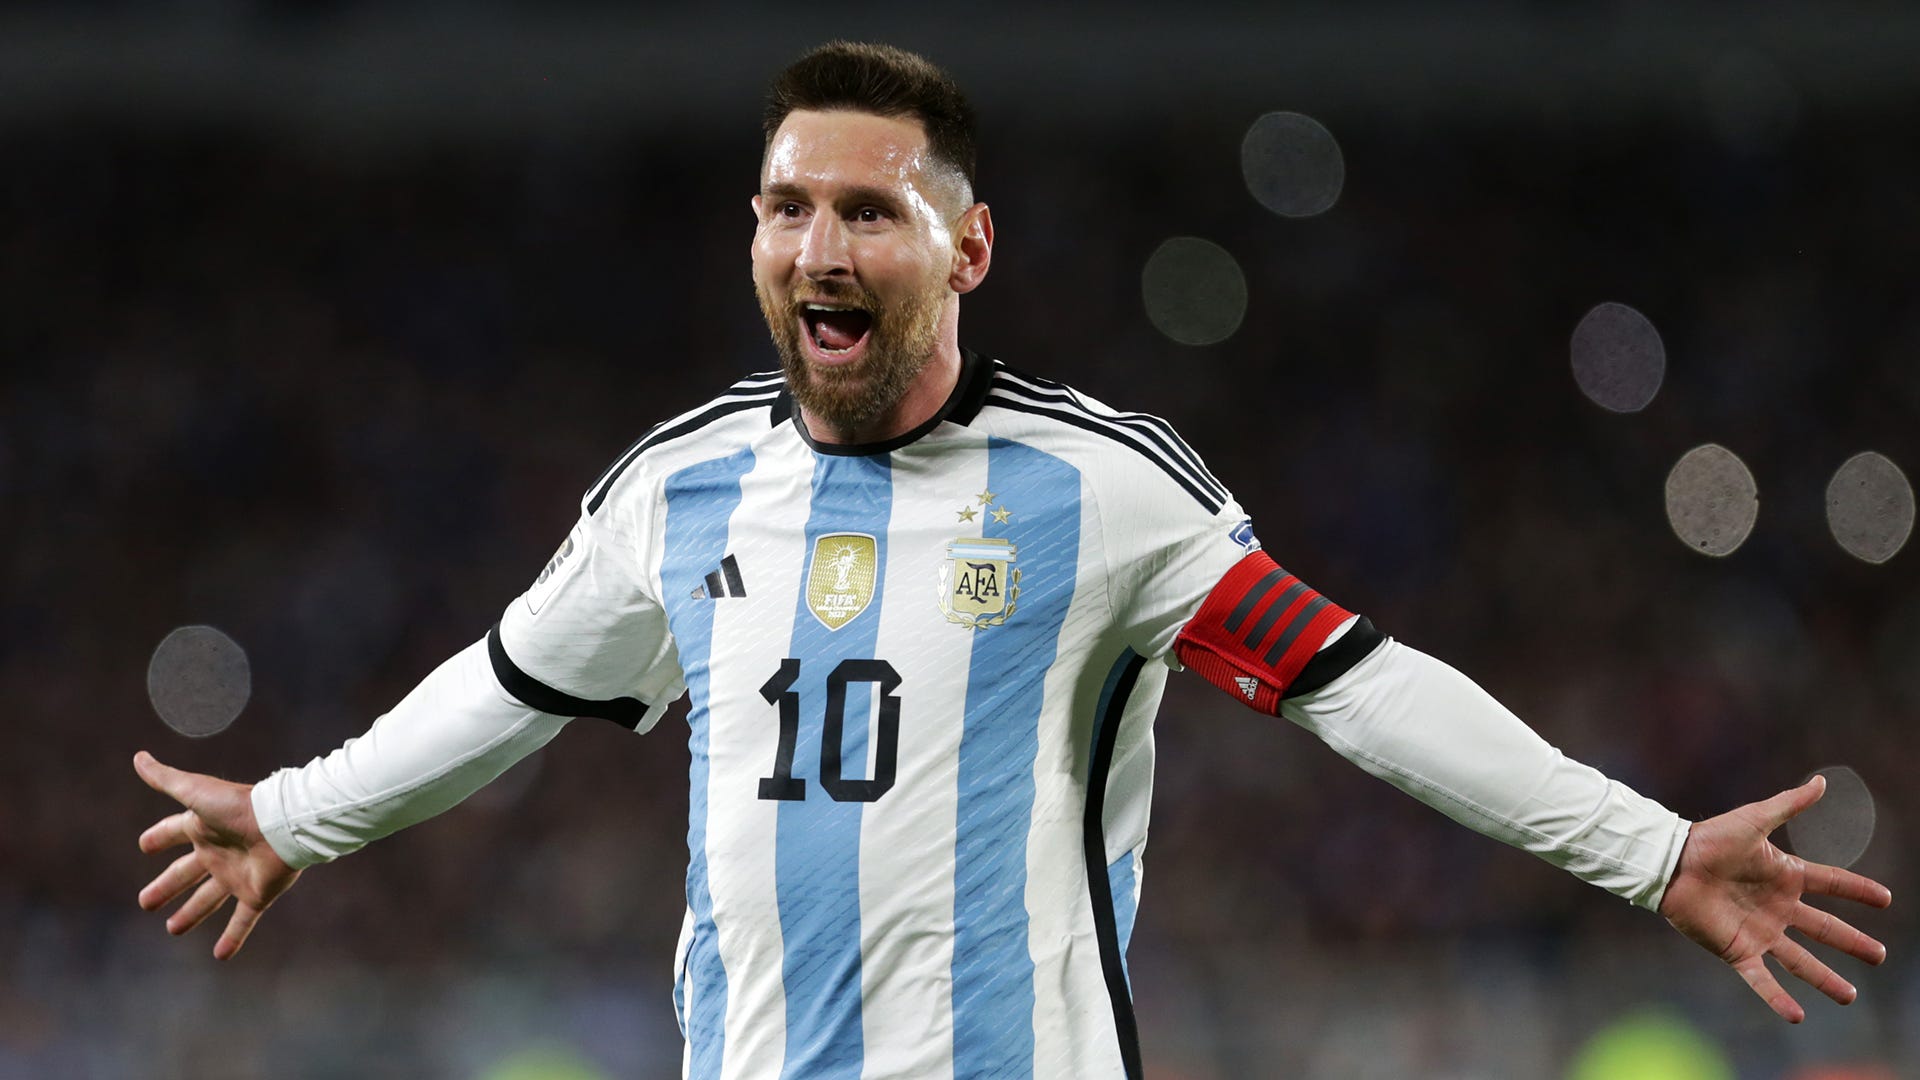 “Todos nos quieren ganar”, fuertes palabras de Messi